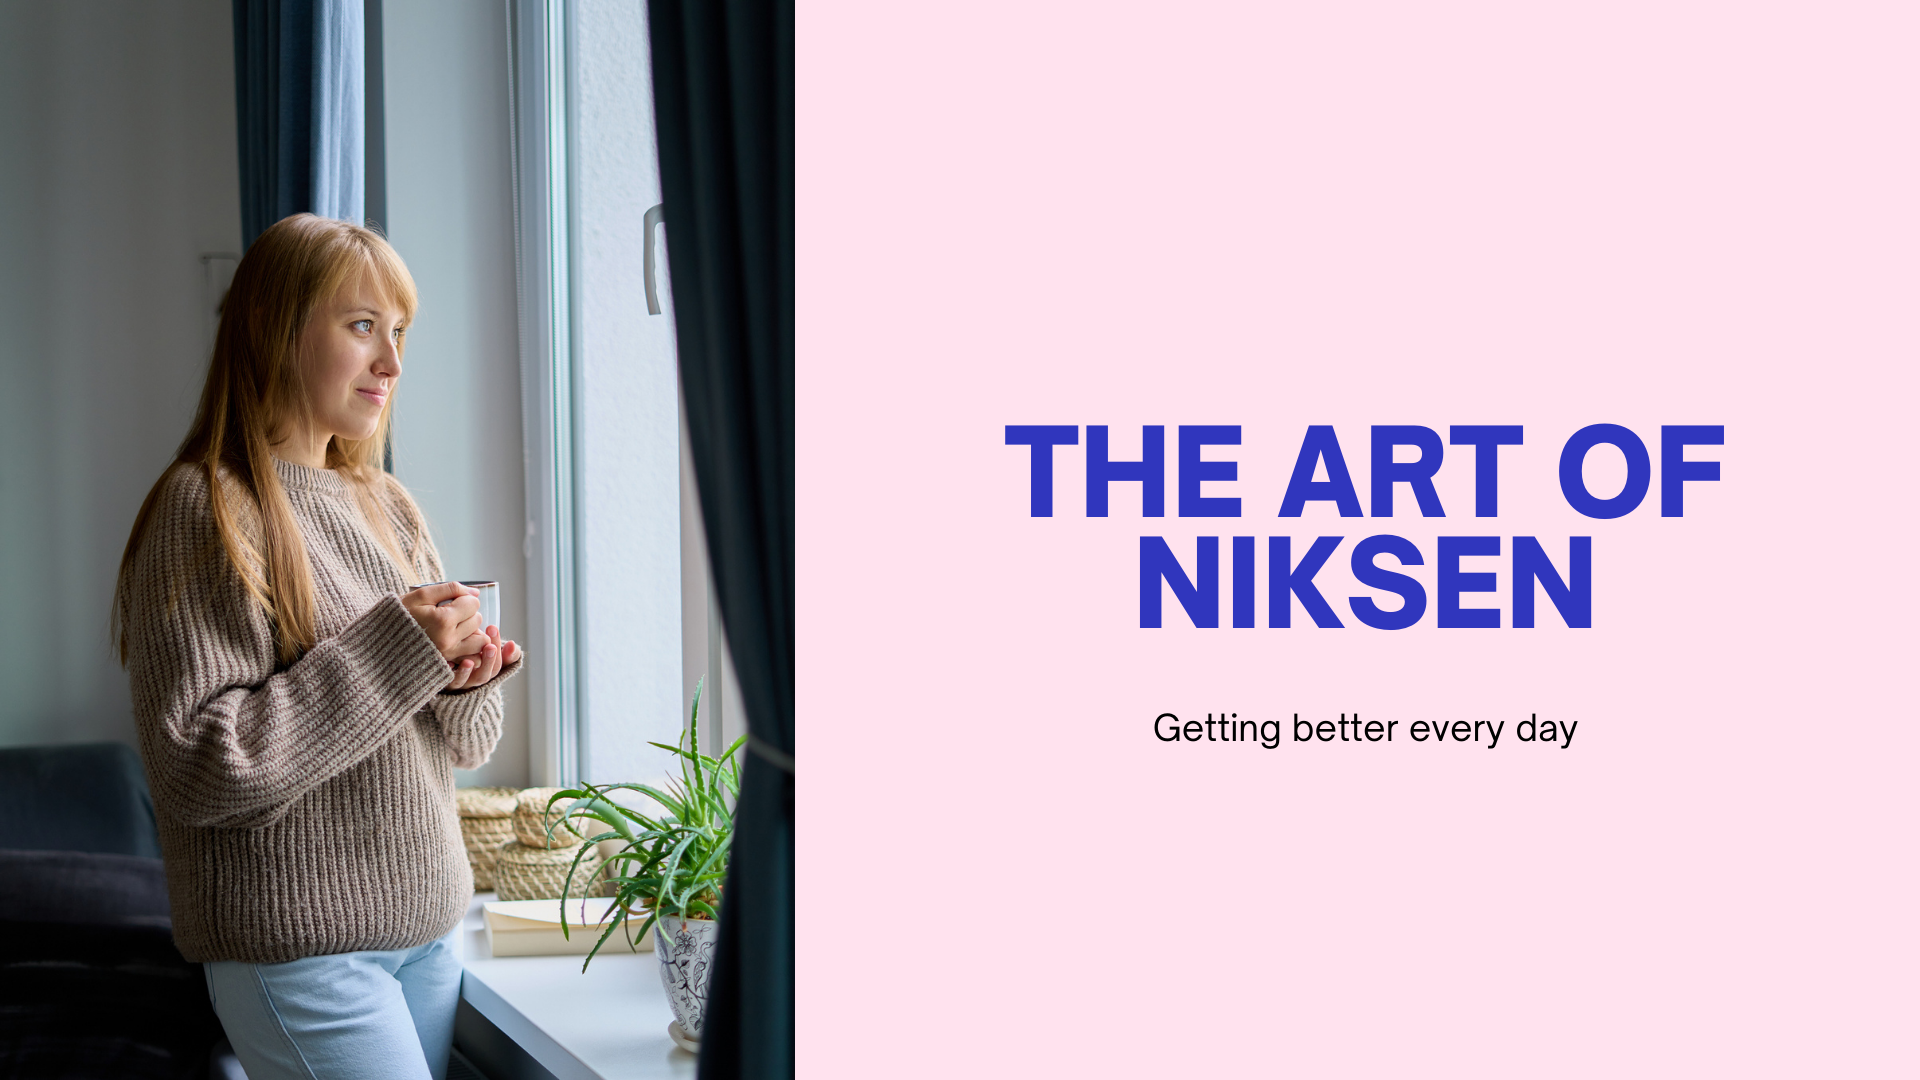 The art of Niksen